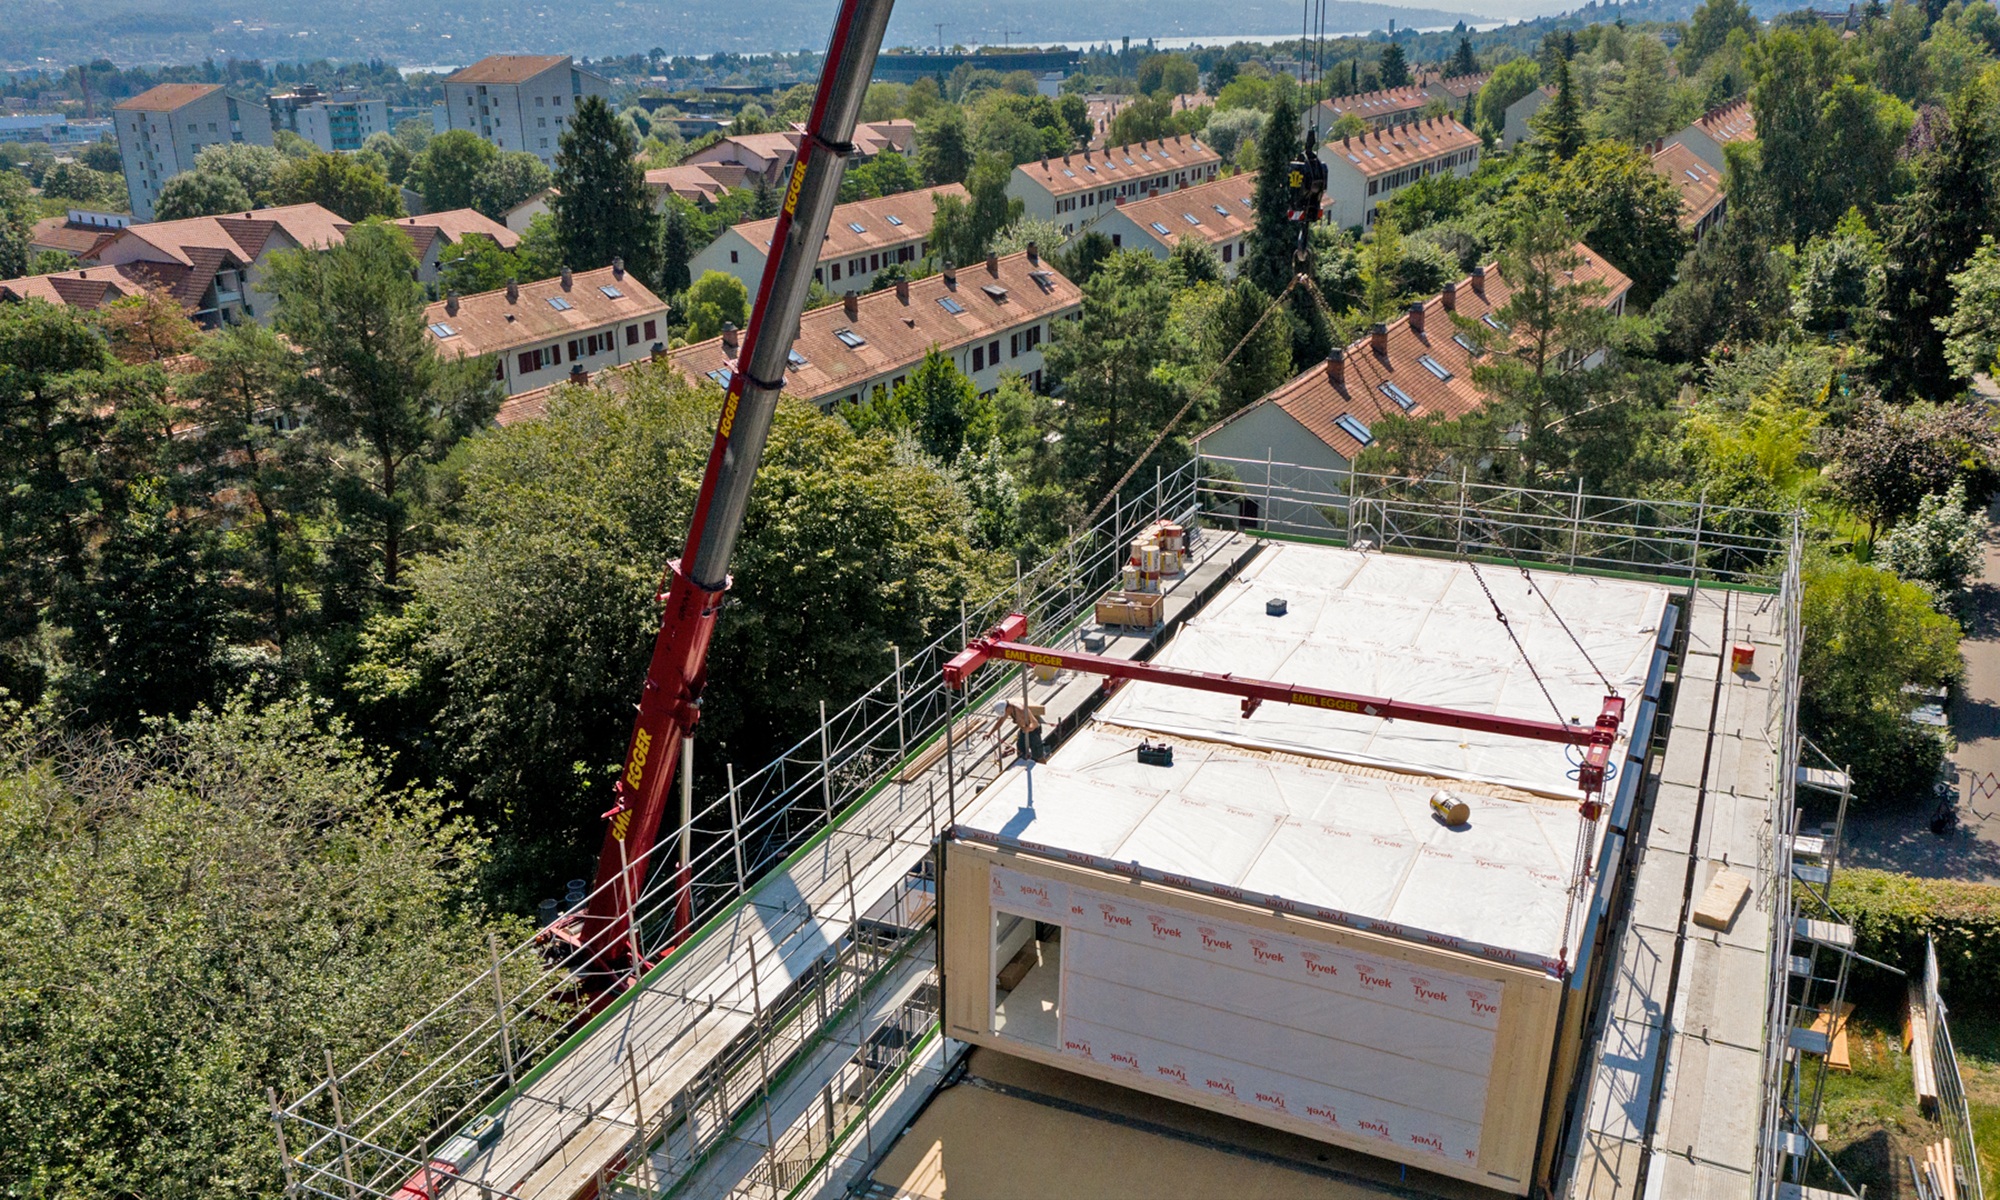 Blick aus der Luft auf das Dach des Schulhauses Friesenberg mit fünf bereits platzierten Holzmodulen auf dem Dach.